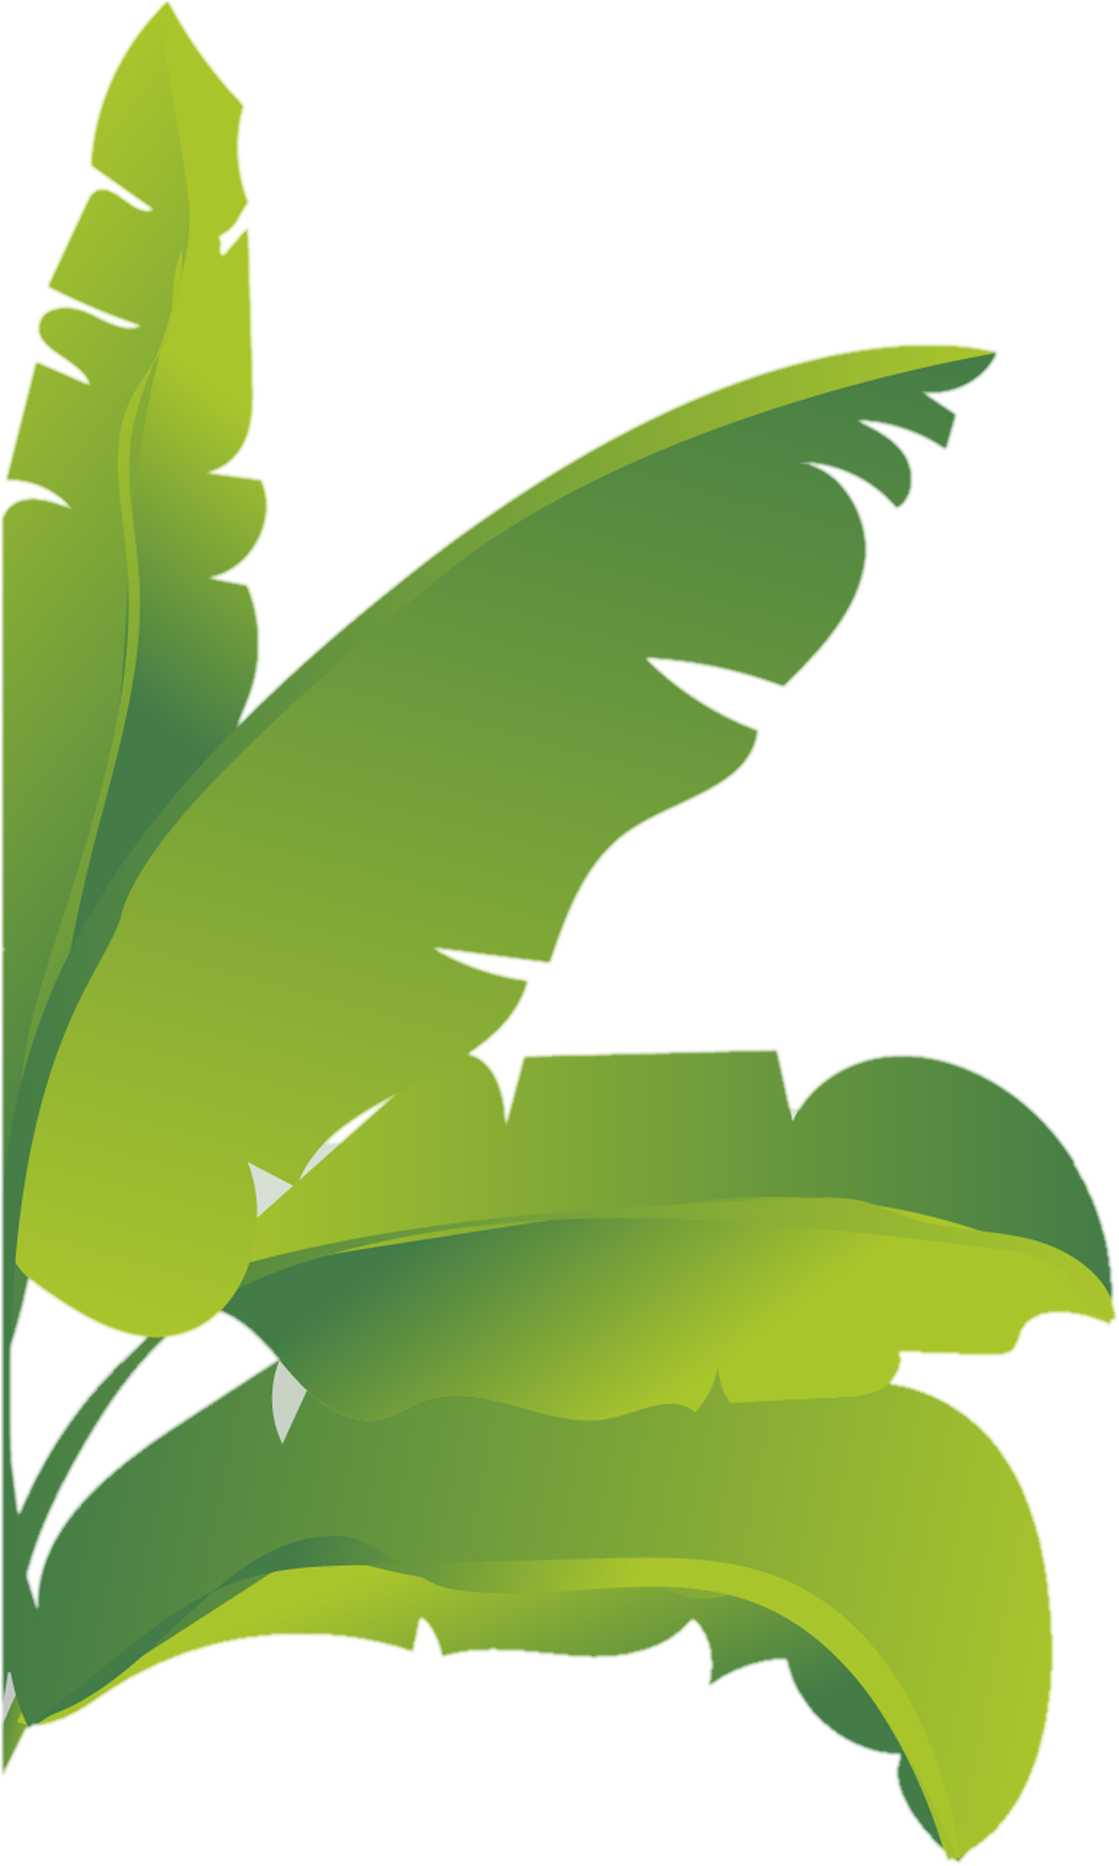 Banana Leaf Vector Illustration